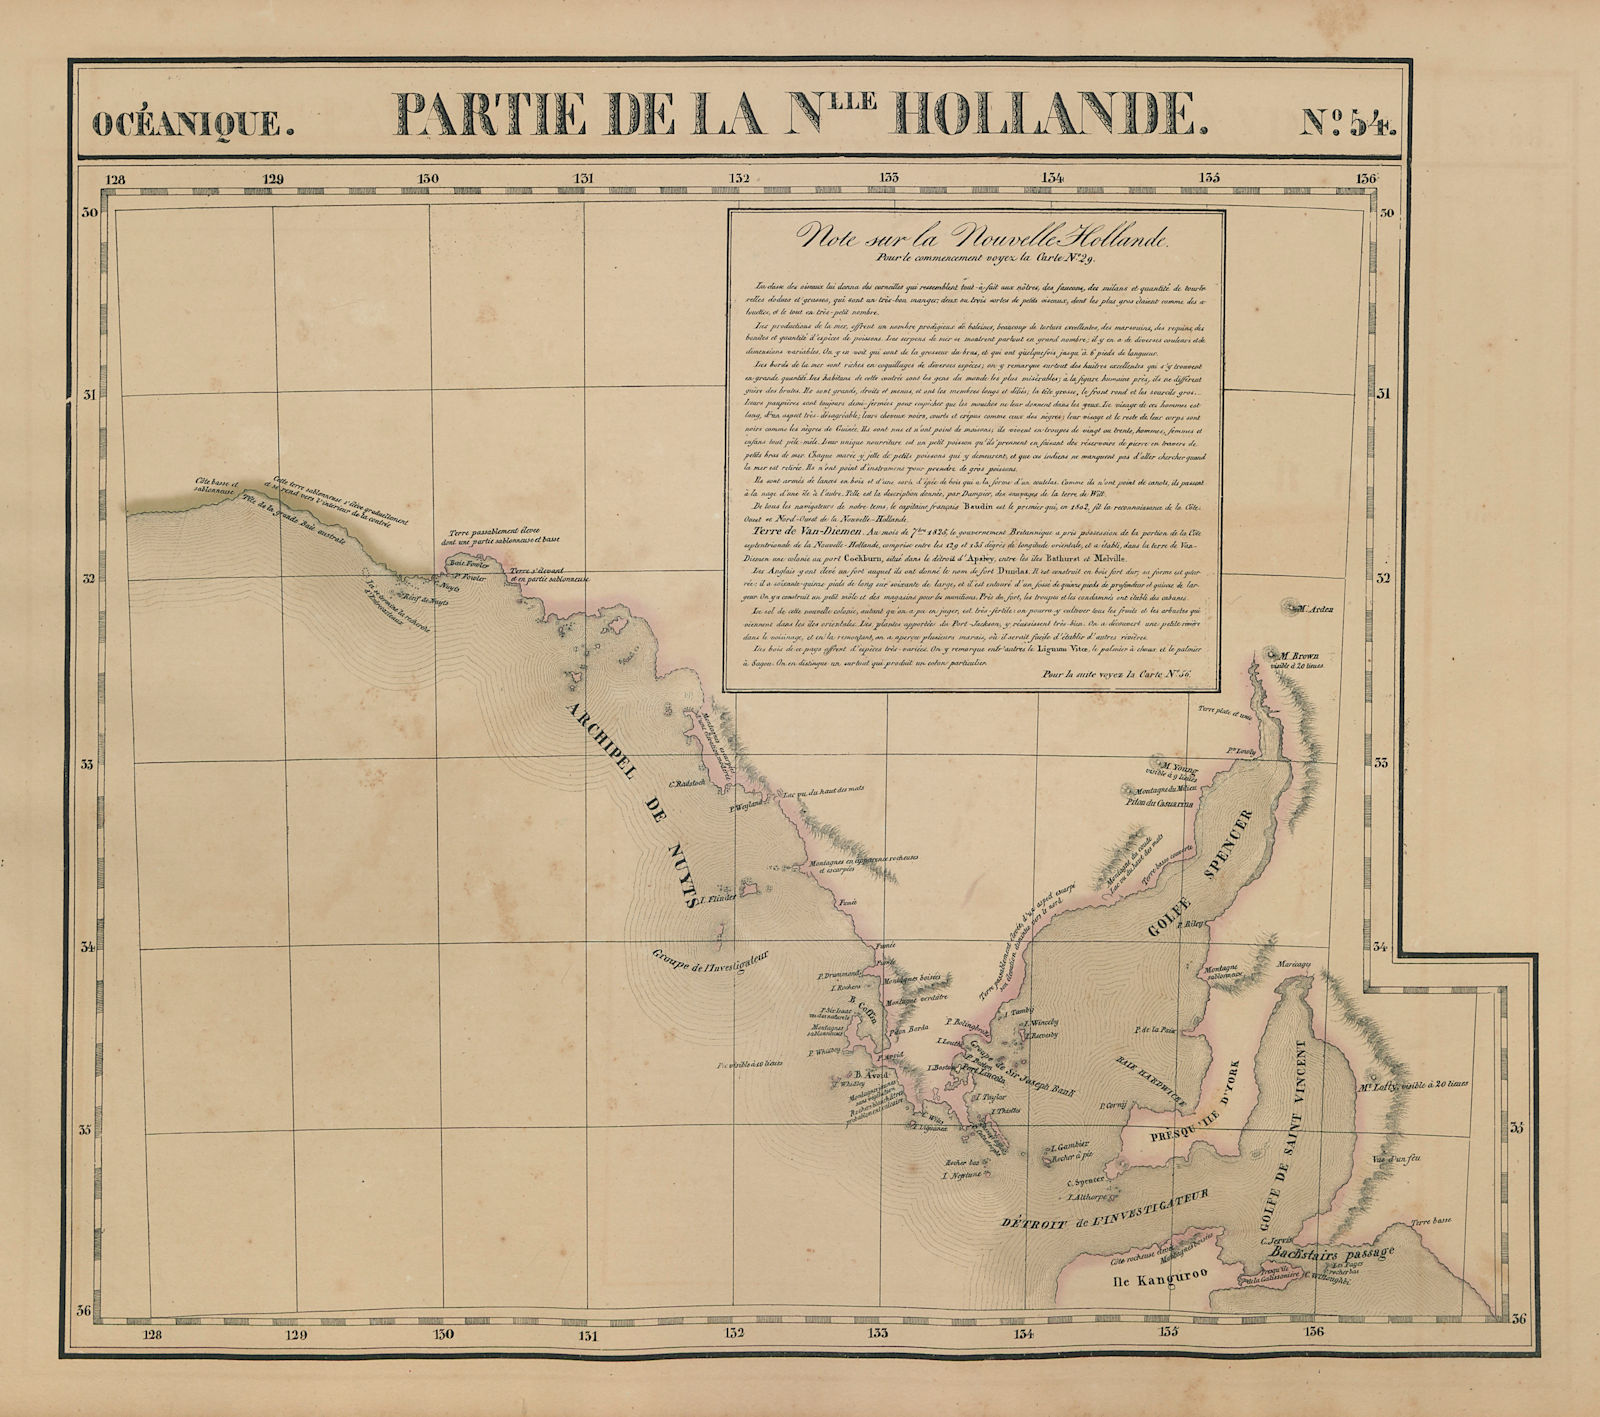 Océanique. Partie… Nlle Hollande #54 South Australia coast VANDERMAELEN 1827 map